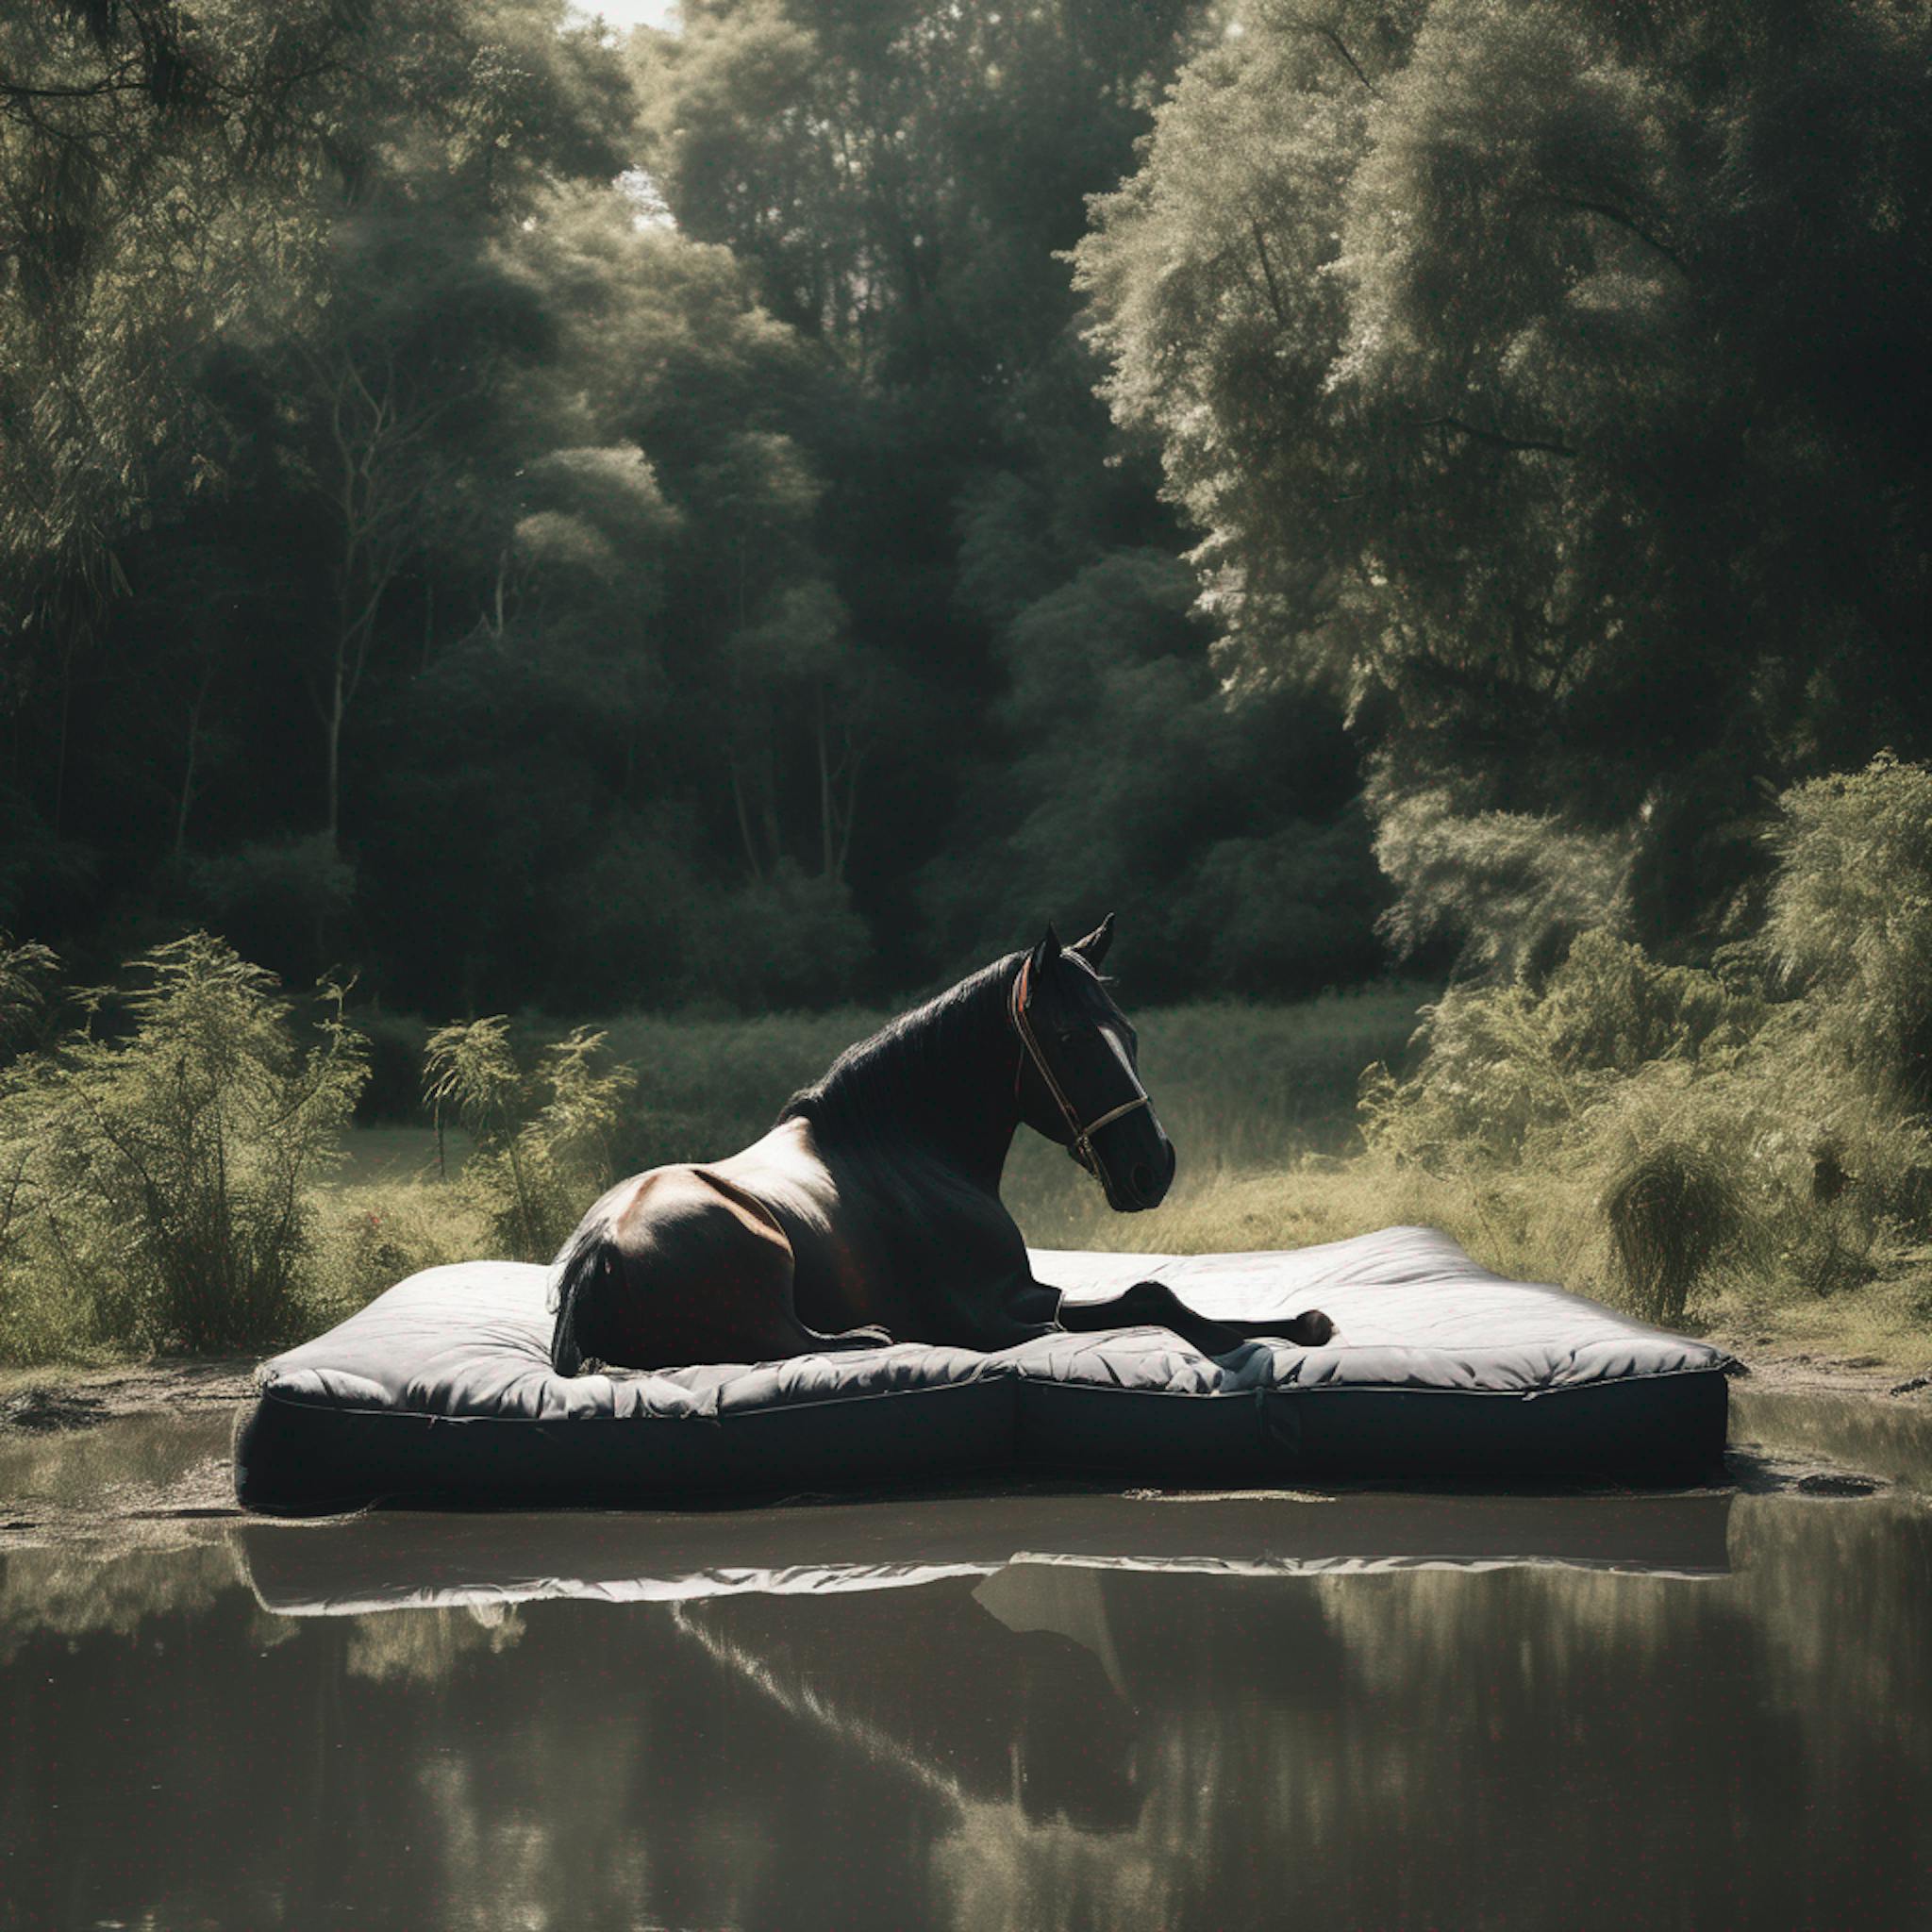 horse on a mattress